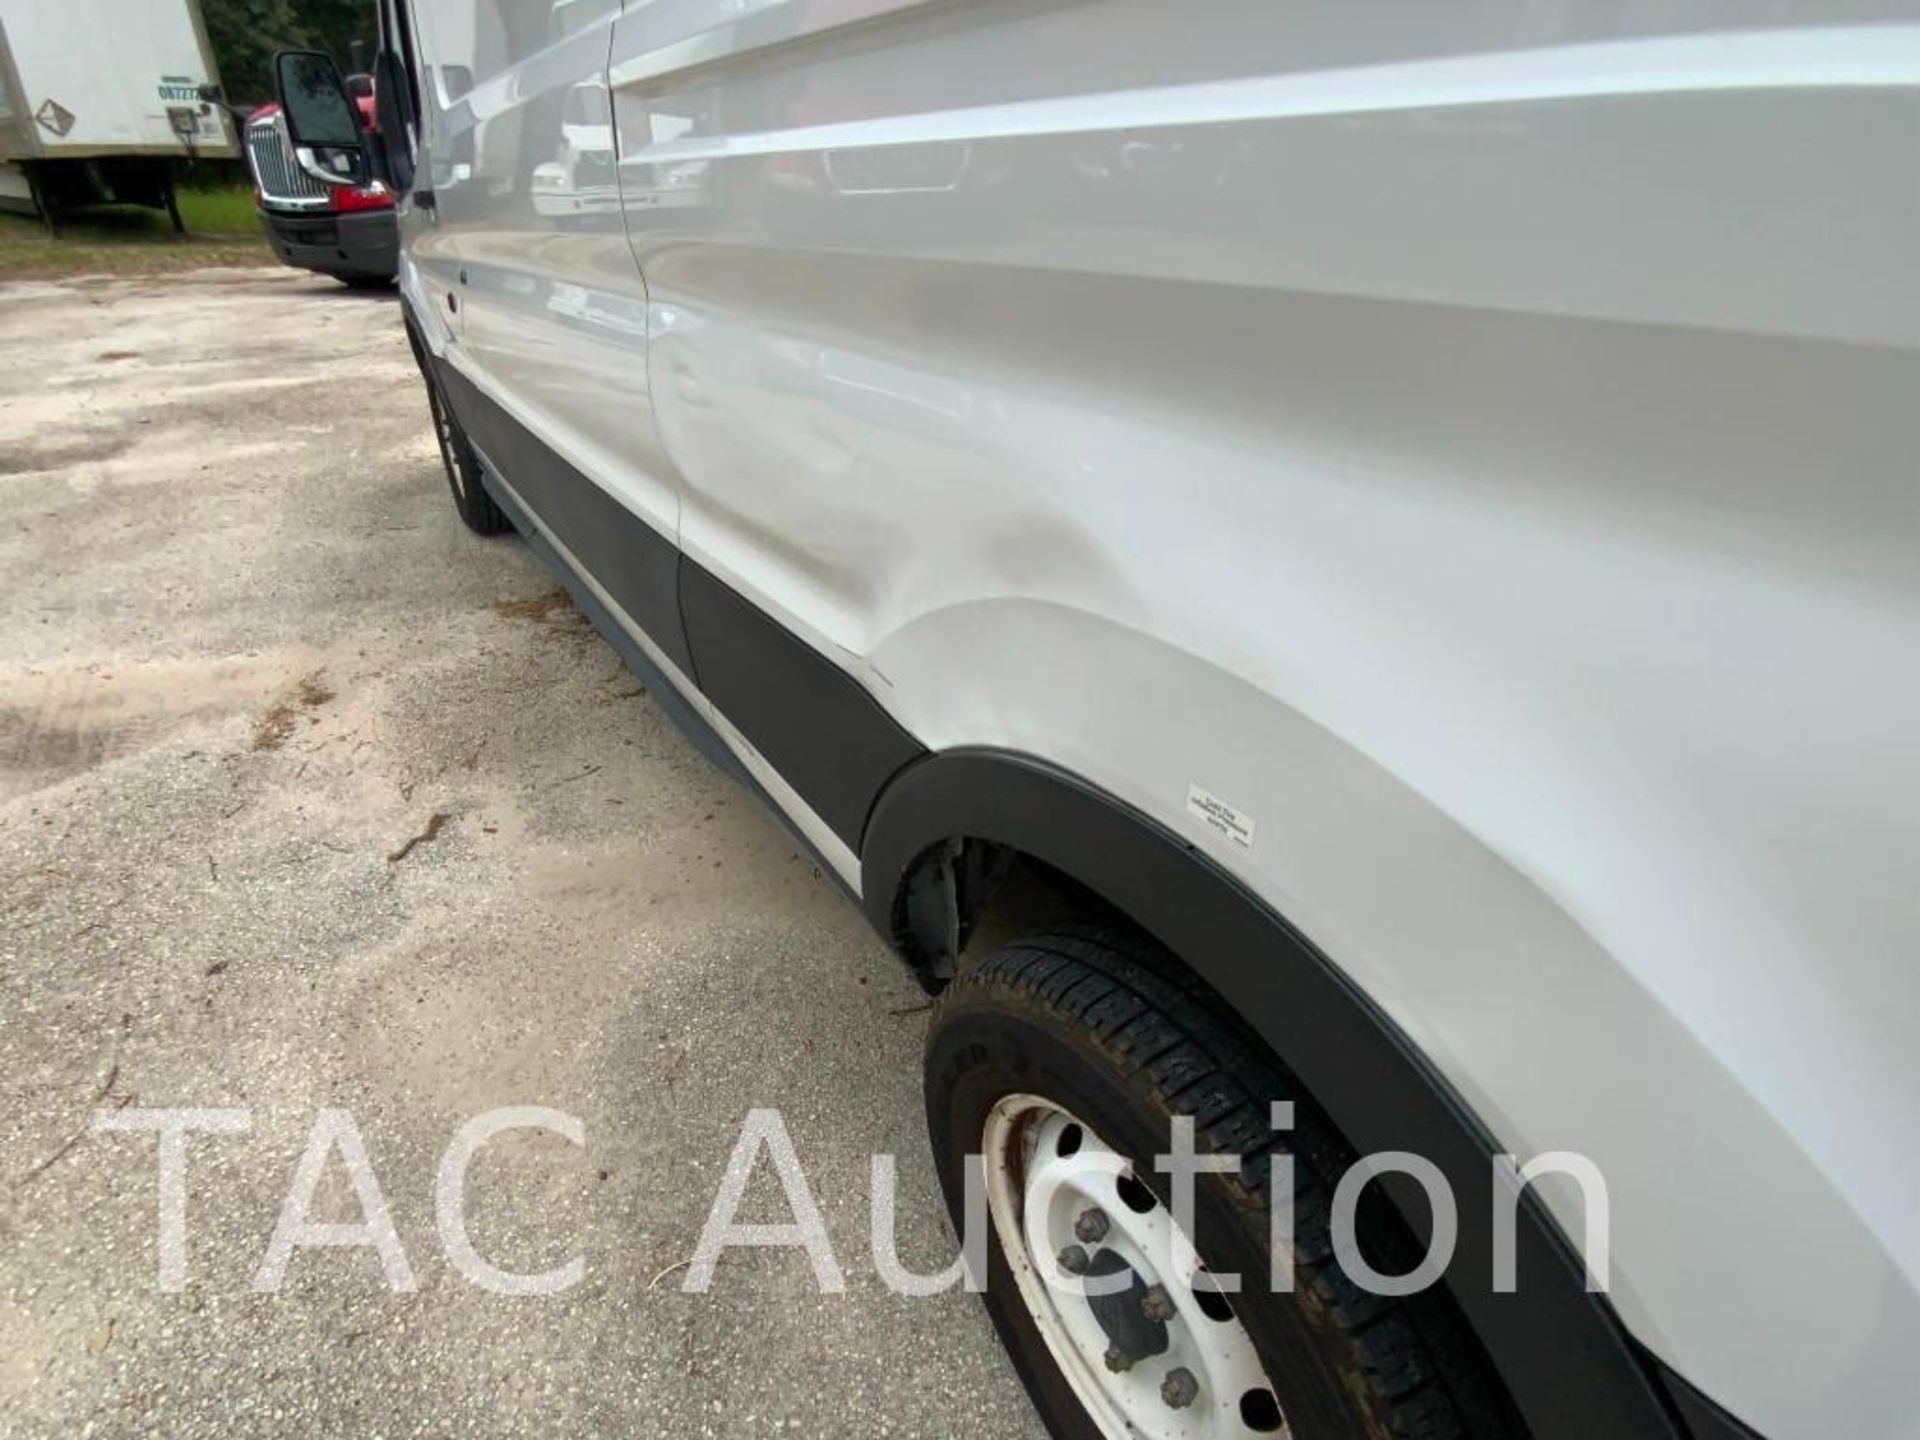 2019 Ford Transit 150 Cargo Van - Image 46 of 54